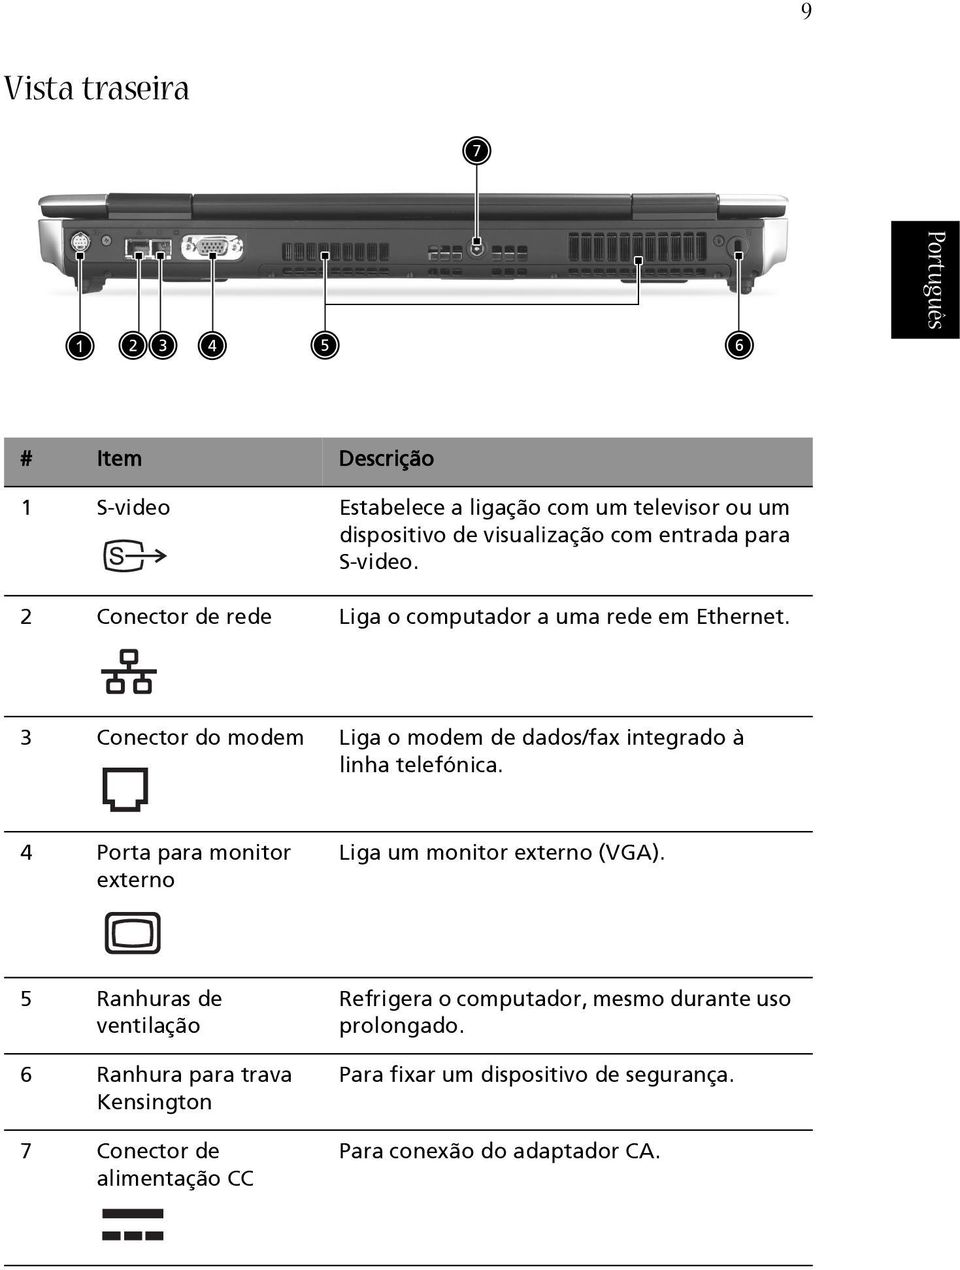 3 Conector do modem Liga o modem de dados/fax integrado à linha telefónica. 4 Porta para monitor externo Liga um monitor externo (VGA).